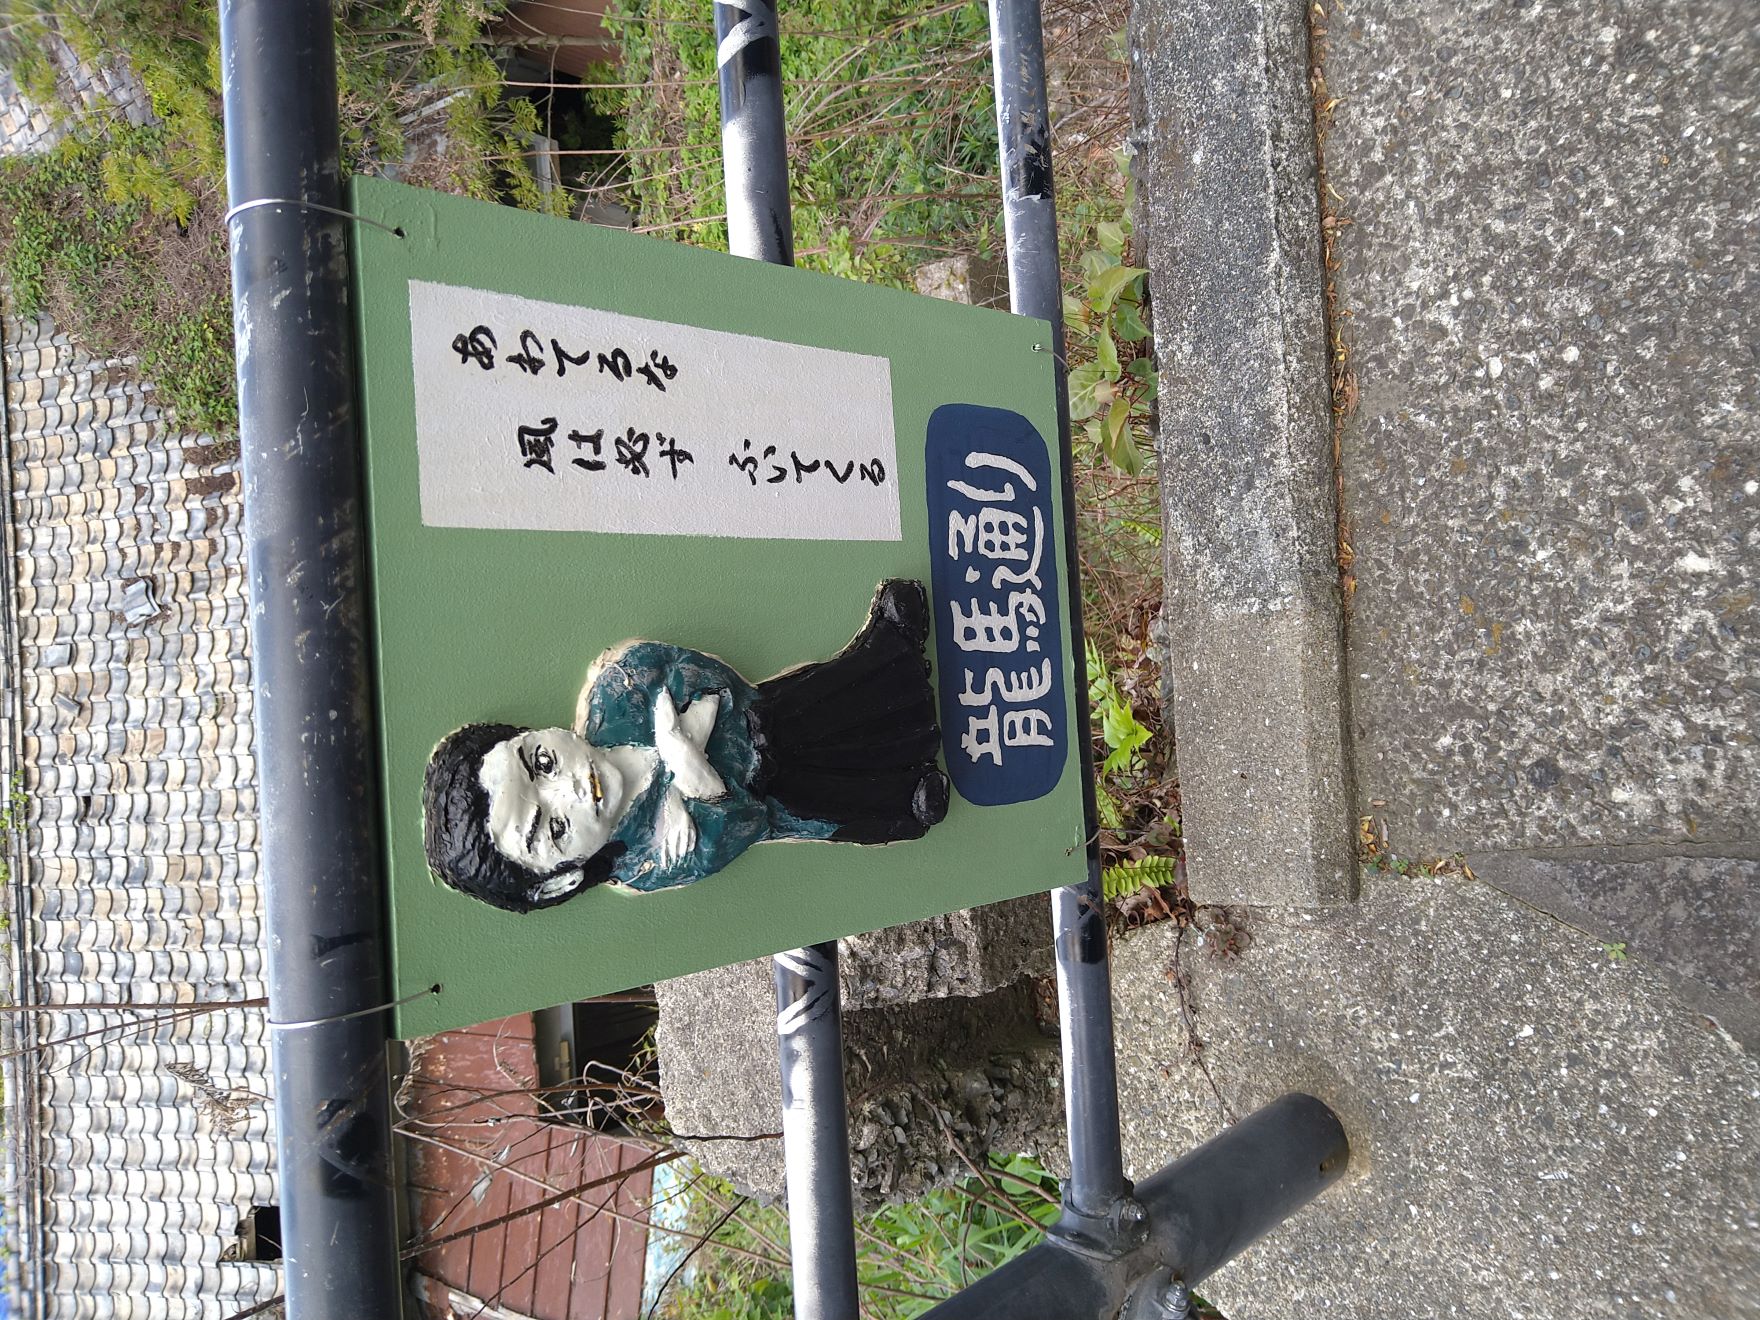 長崎県長崎市の風頭公園付近にある龍馬通りにある坂本龍馬の絵です。一言が添えられています。